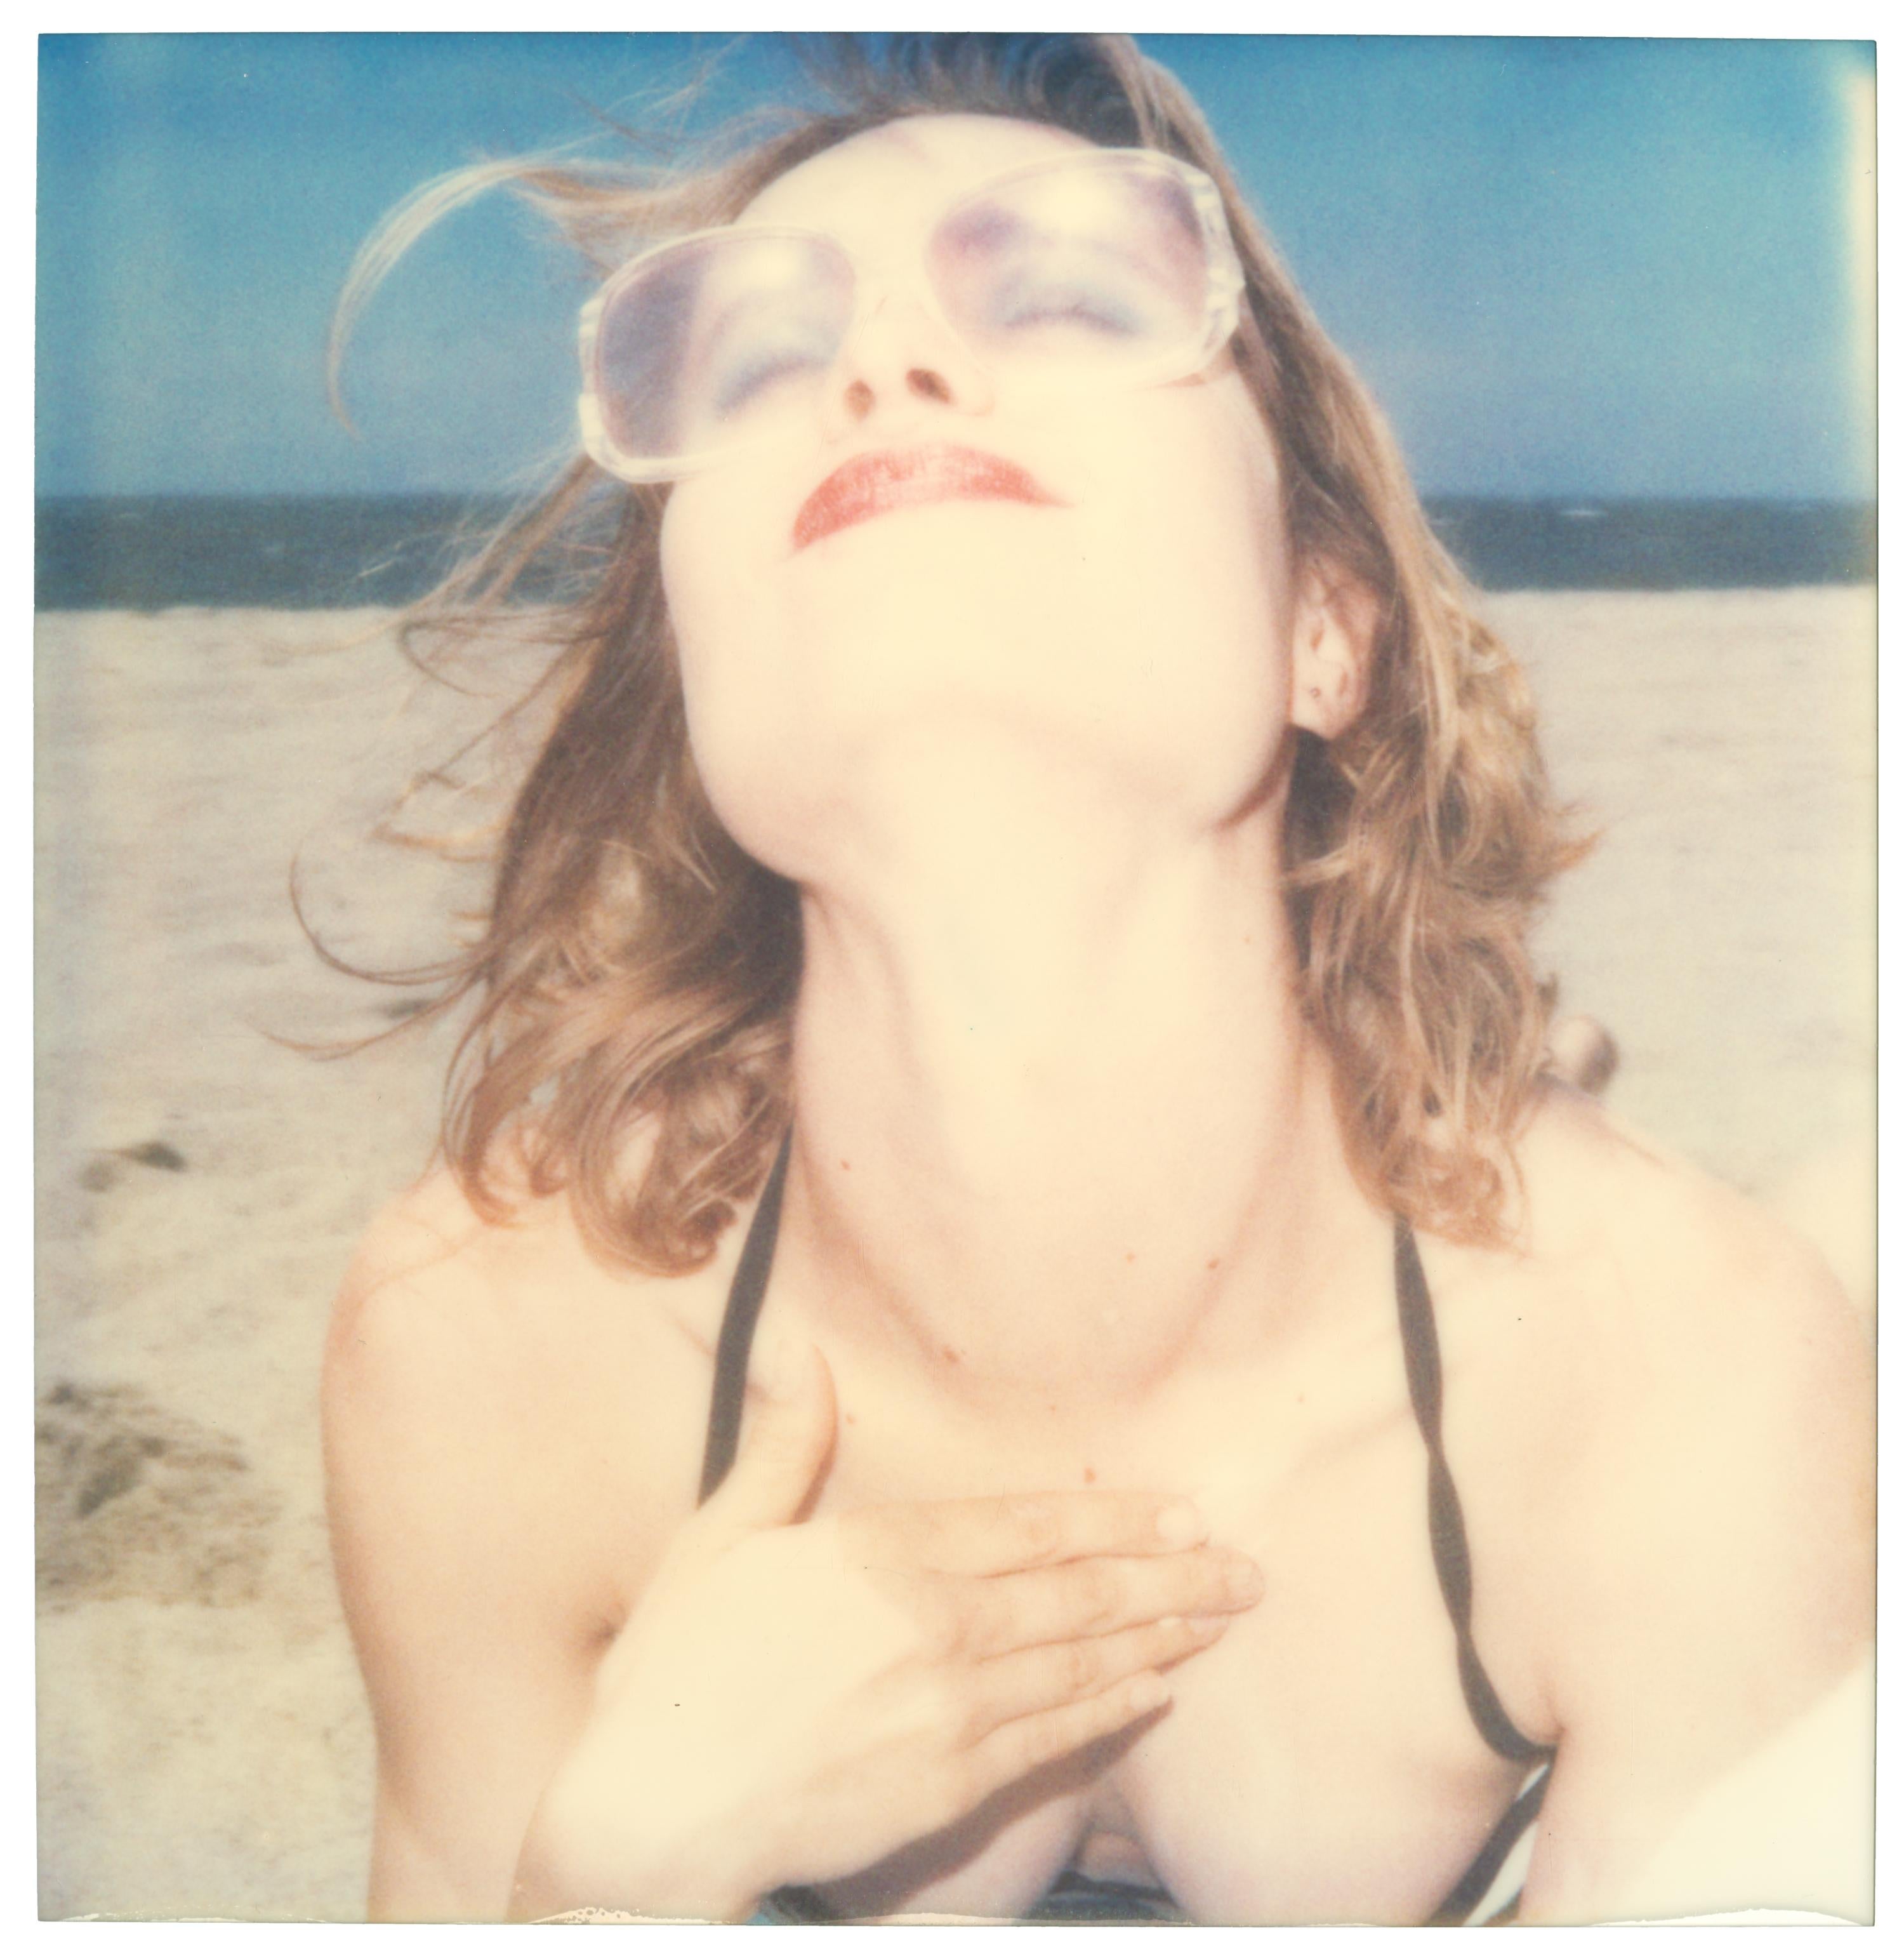 Stefanie Schneider Color Photograph - Untitled (Beachshoot) - Polaroid - featuring Radha Mitchell